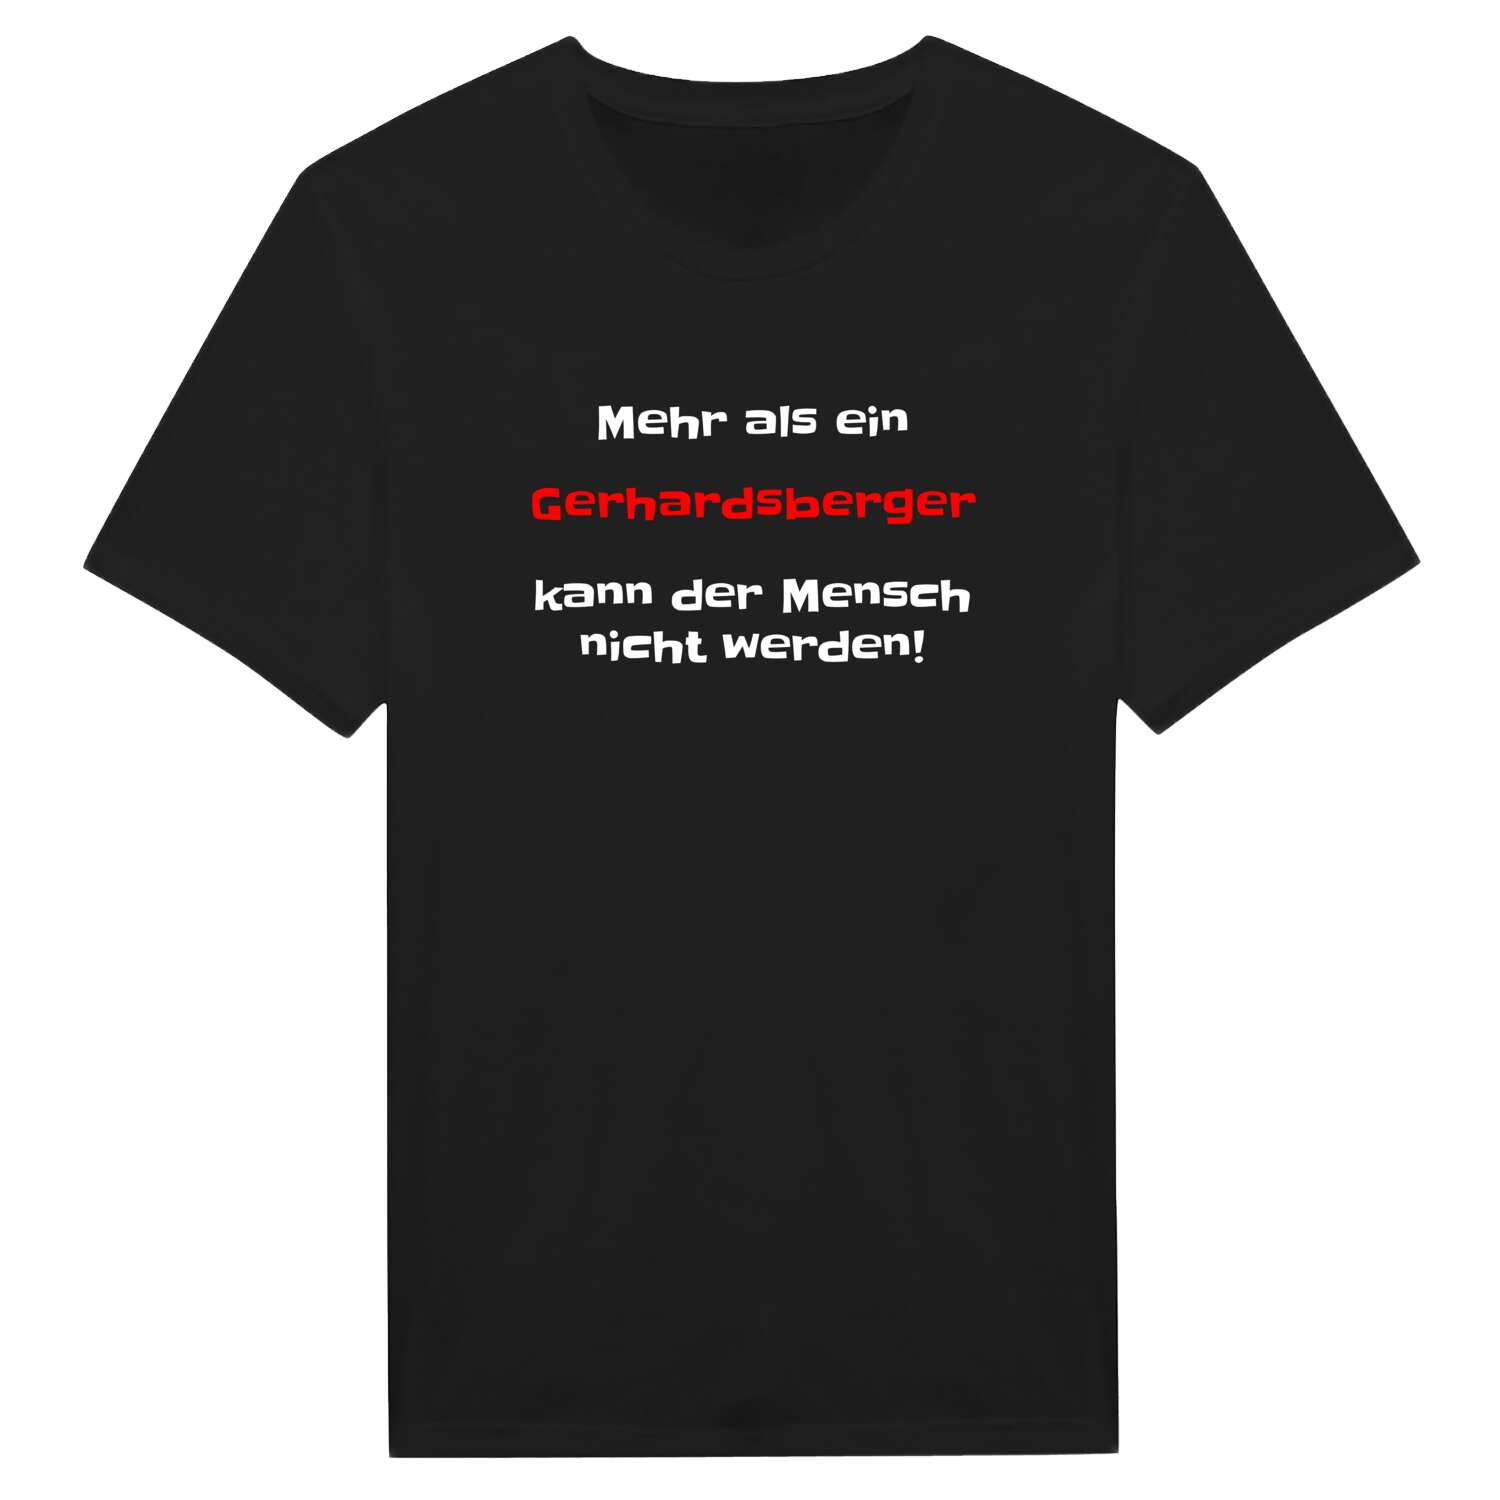 Gerhardsberg T-Shirt »Mehr als ein«